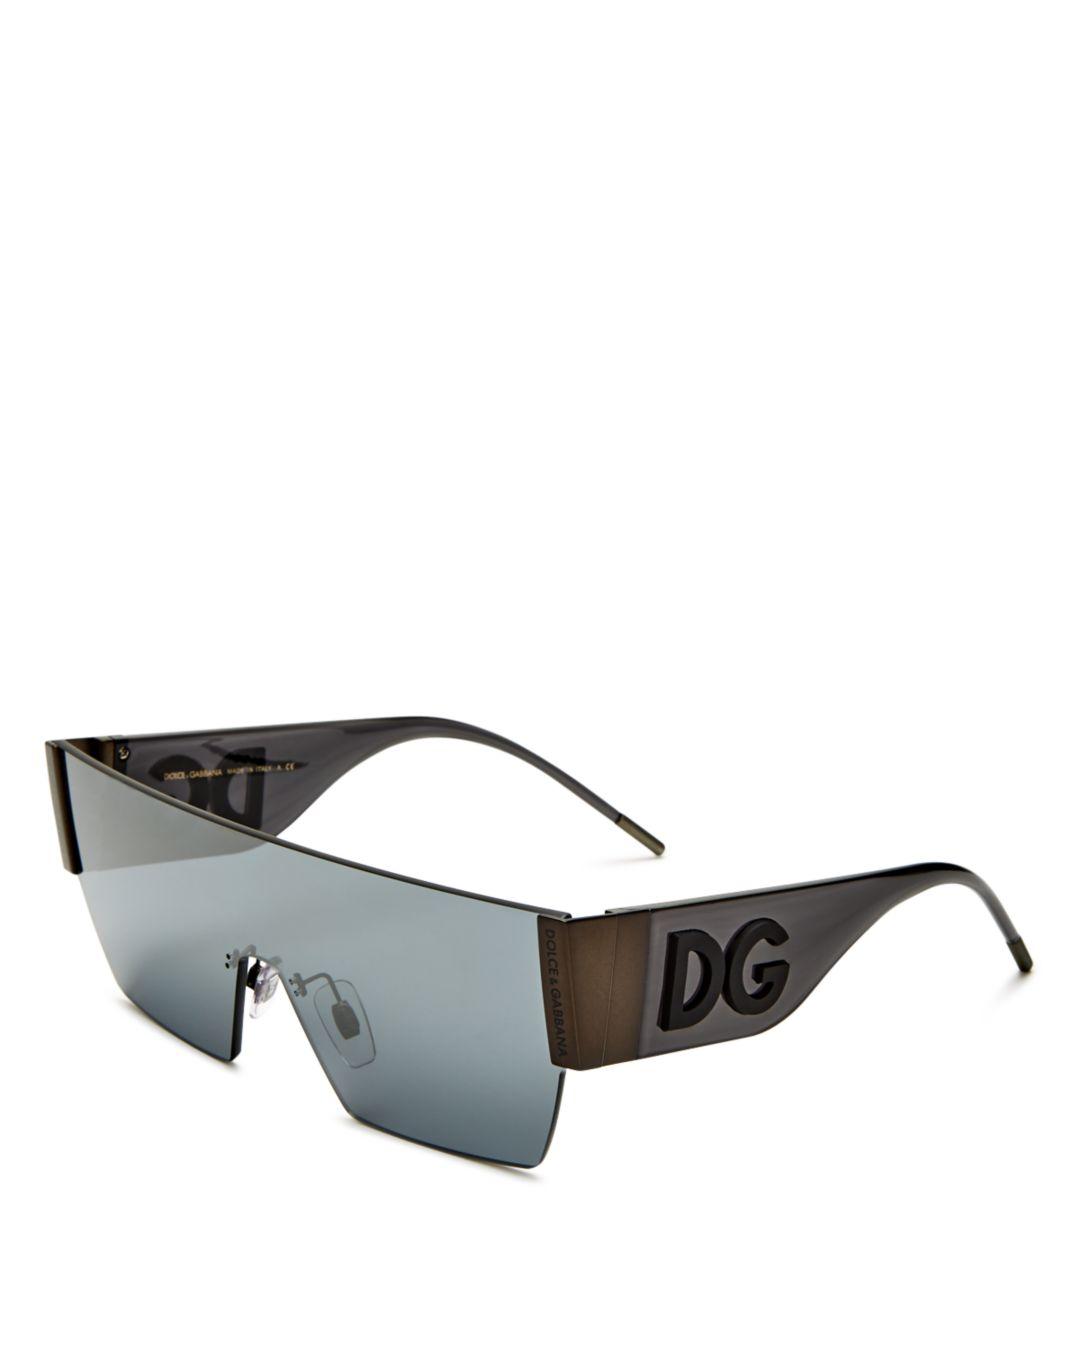 Dolce & Gabbana Dolce & Gabbana Women's Shield Sunglasses in Gray - Lyst